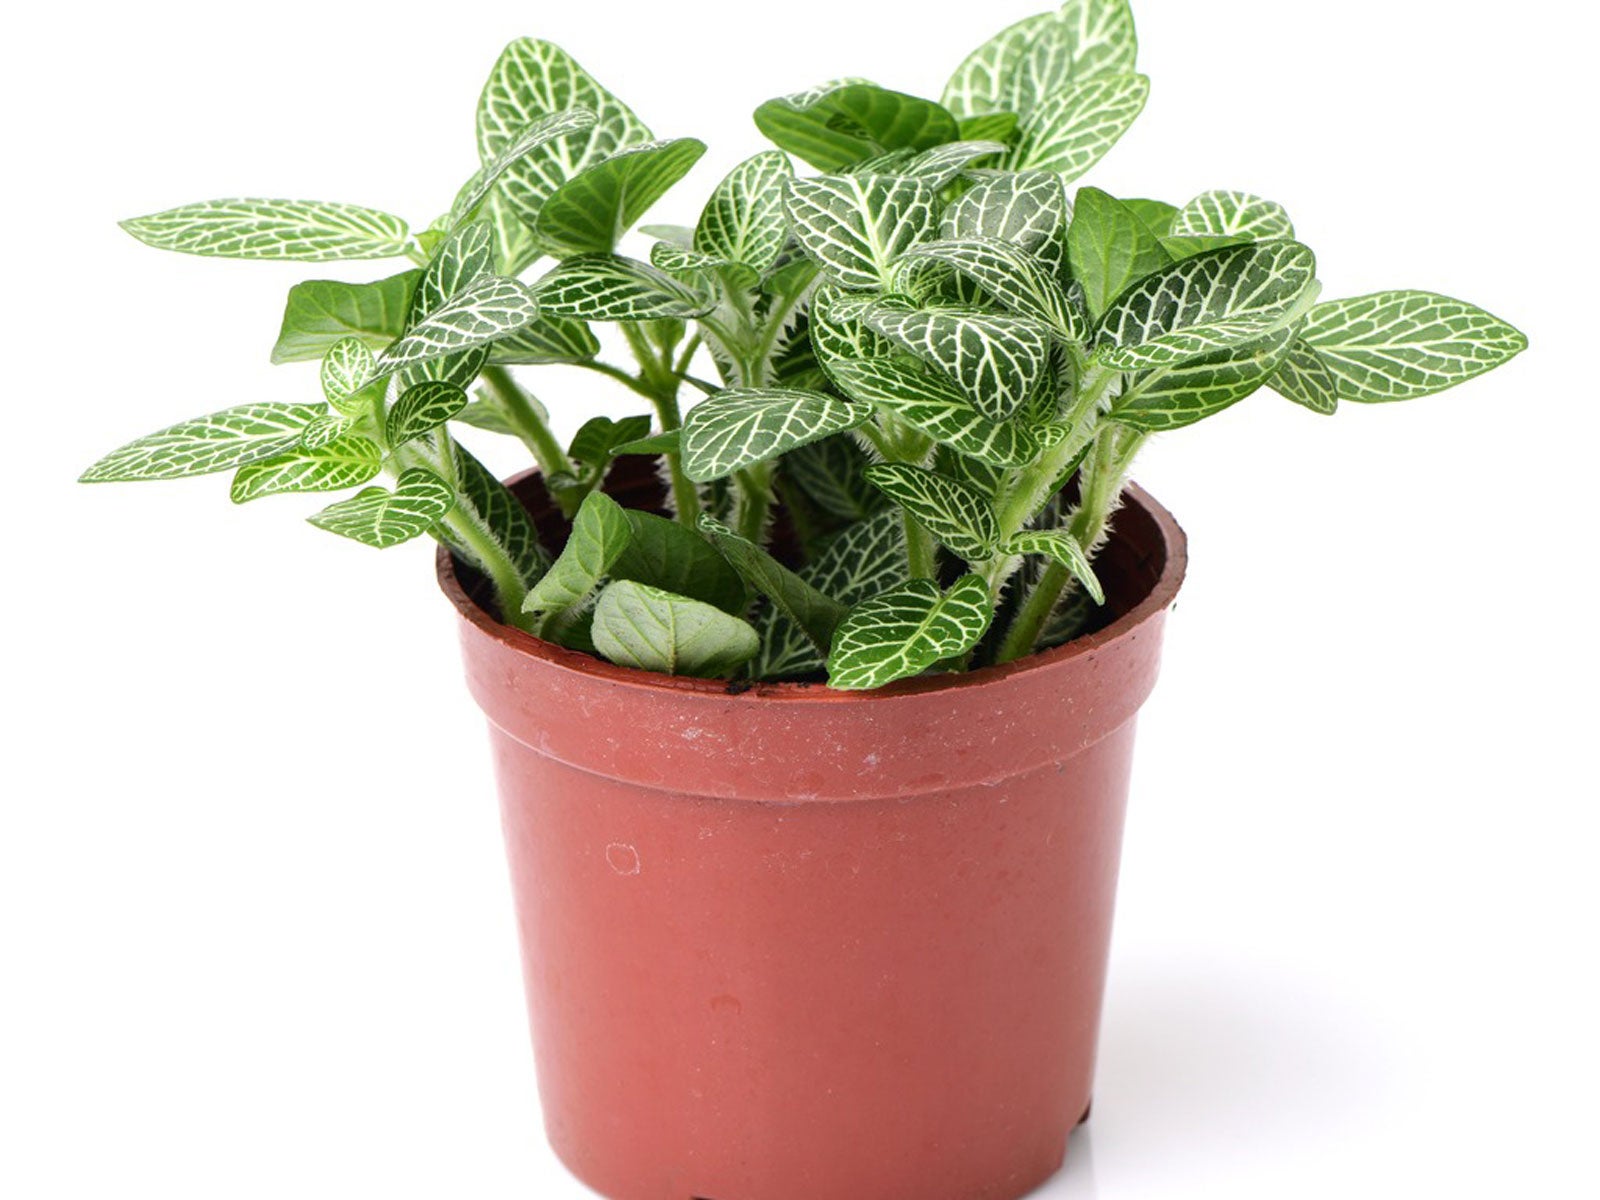 fittonia nerve houseplants - information on nerve plant problems